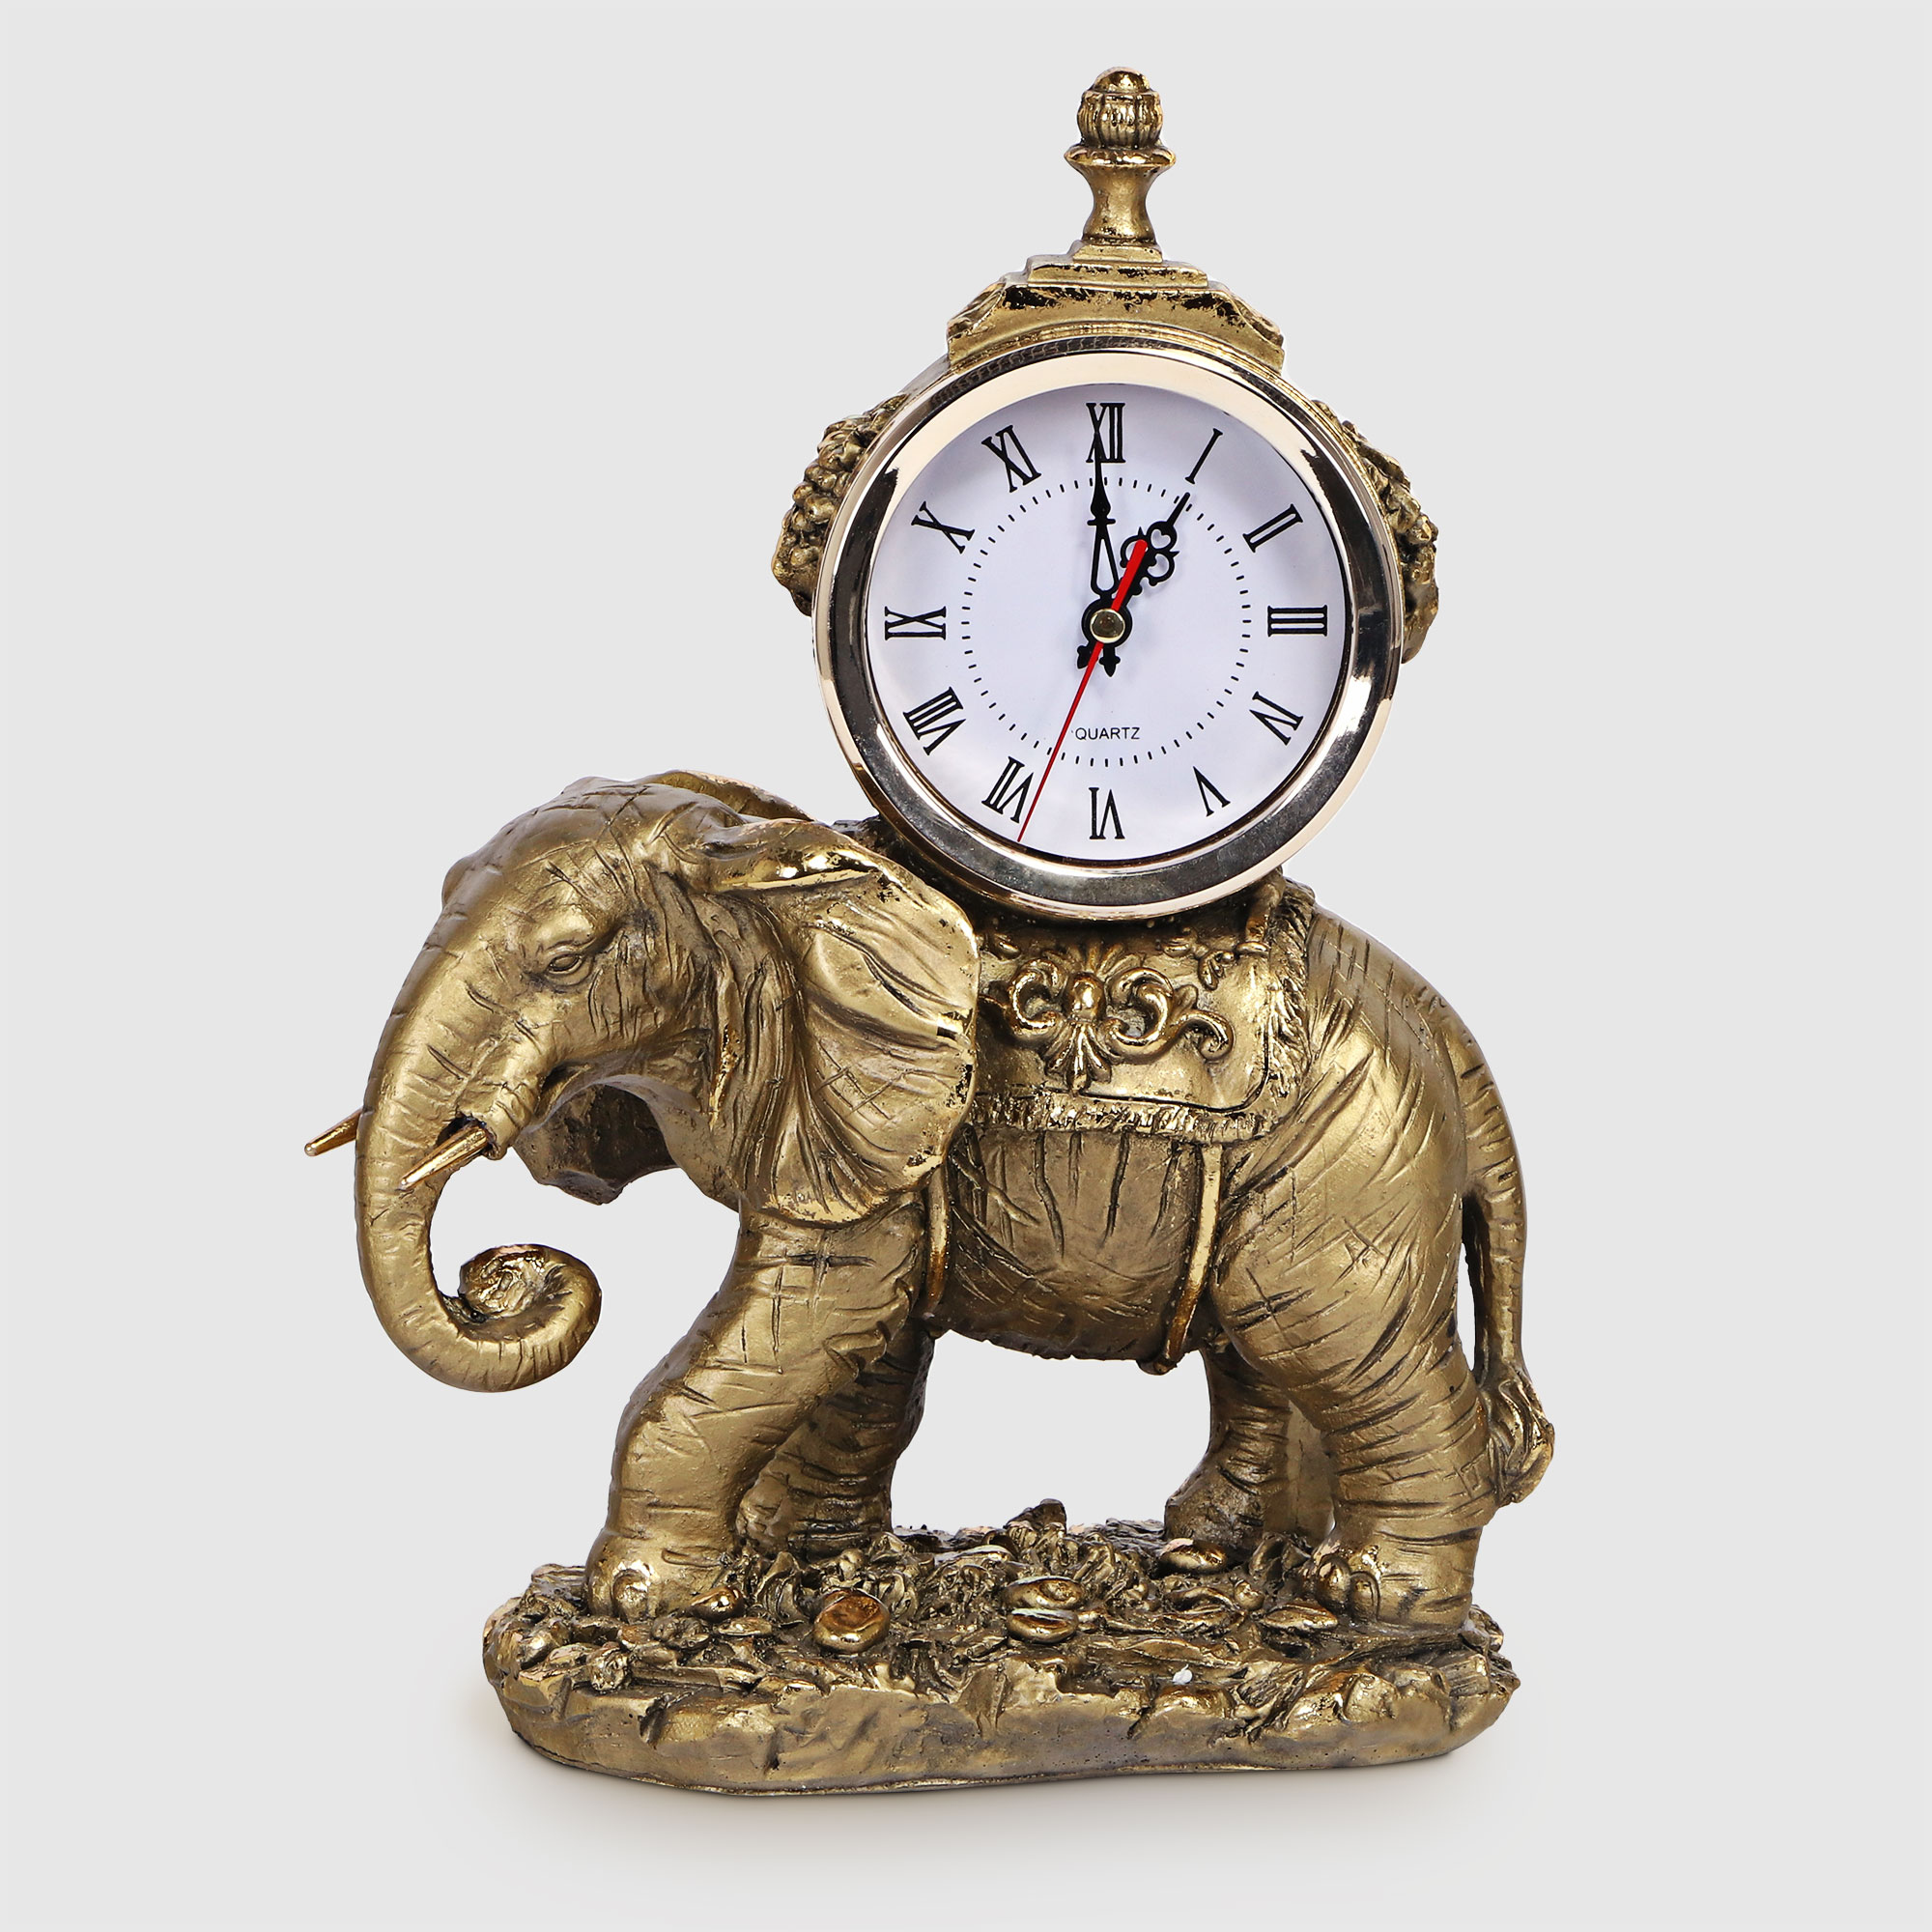 Часы Тпк полиформ слон на камне бронзовый, высота 31 см черепашка тпк полиформ бронзовый высота 16 см